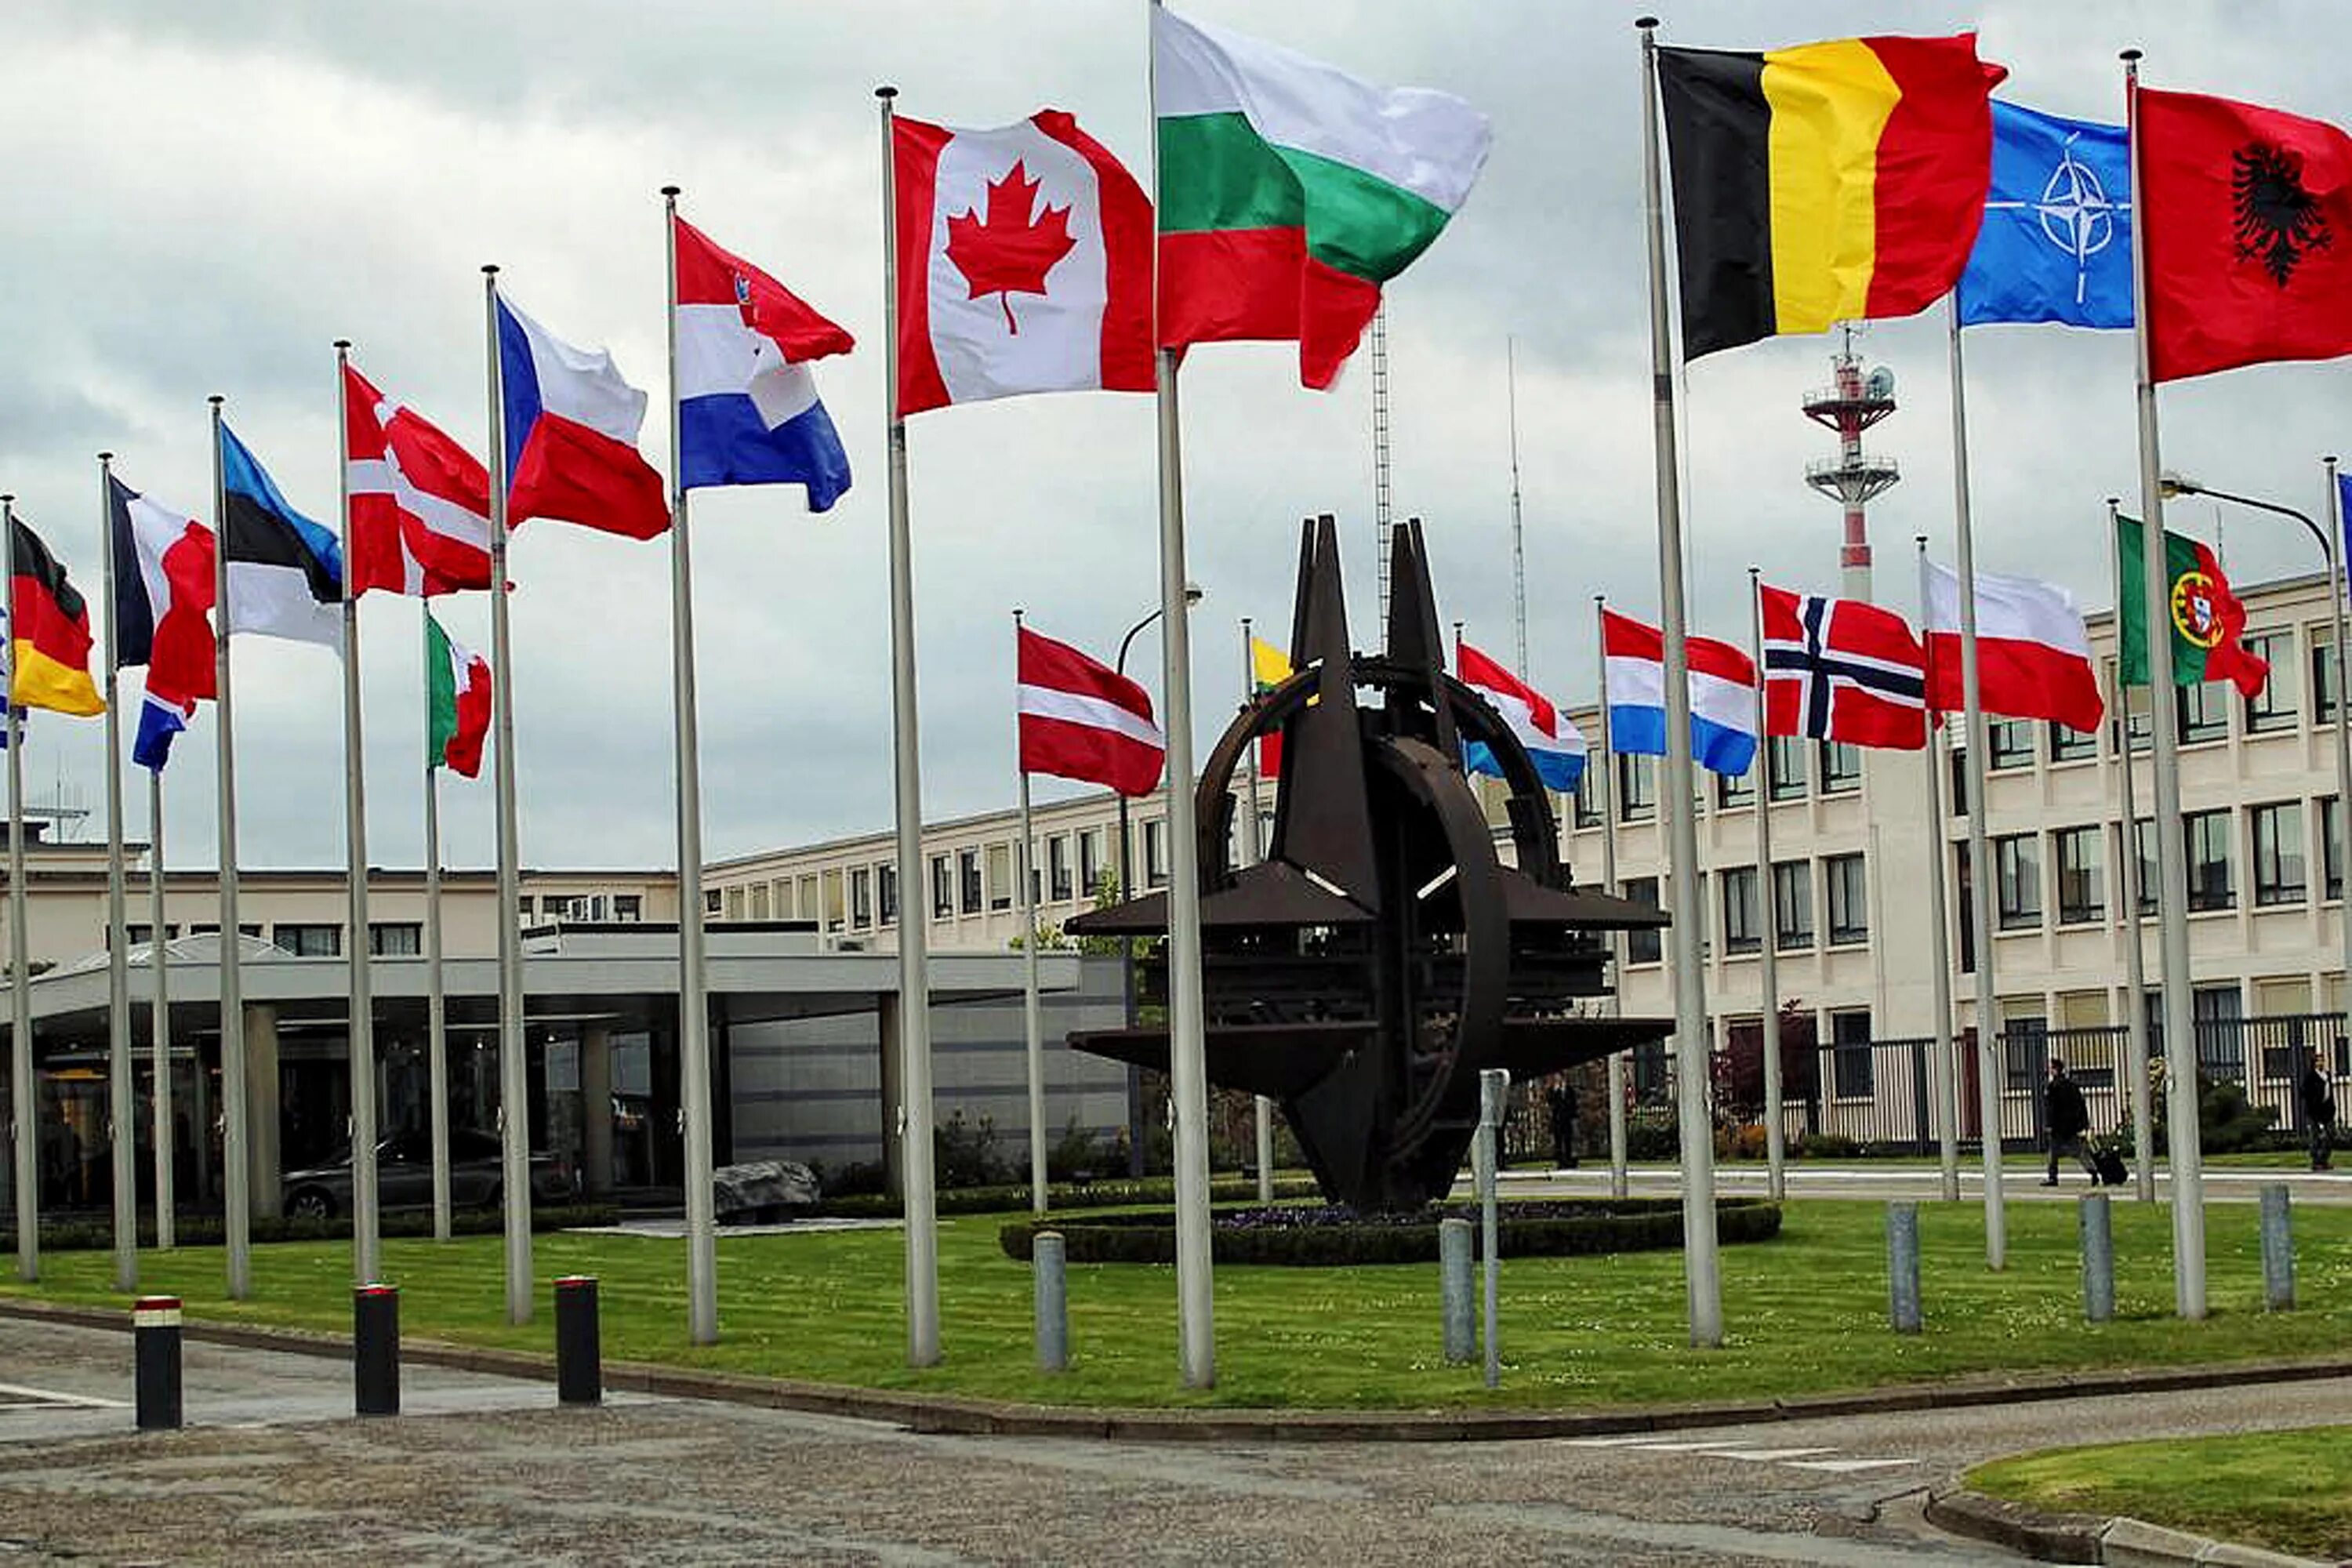 Нато тв. Штаб-квартира НАТО В Брюсселе. Флаг НАТО штаб квартира НАТО В Брюсселе. Штаб квартира НАТО Германия. Брюссель столица НАТО.